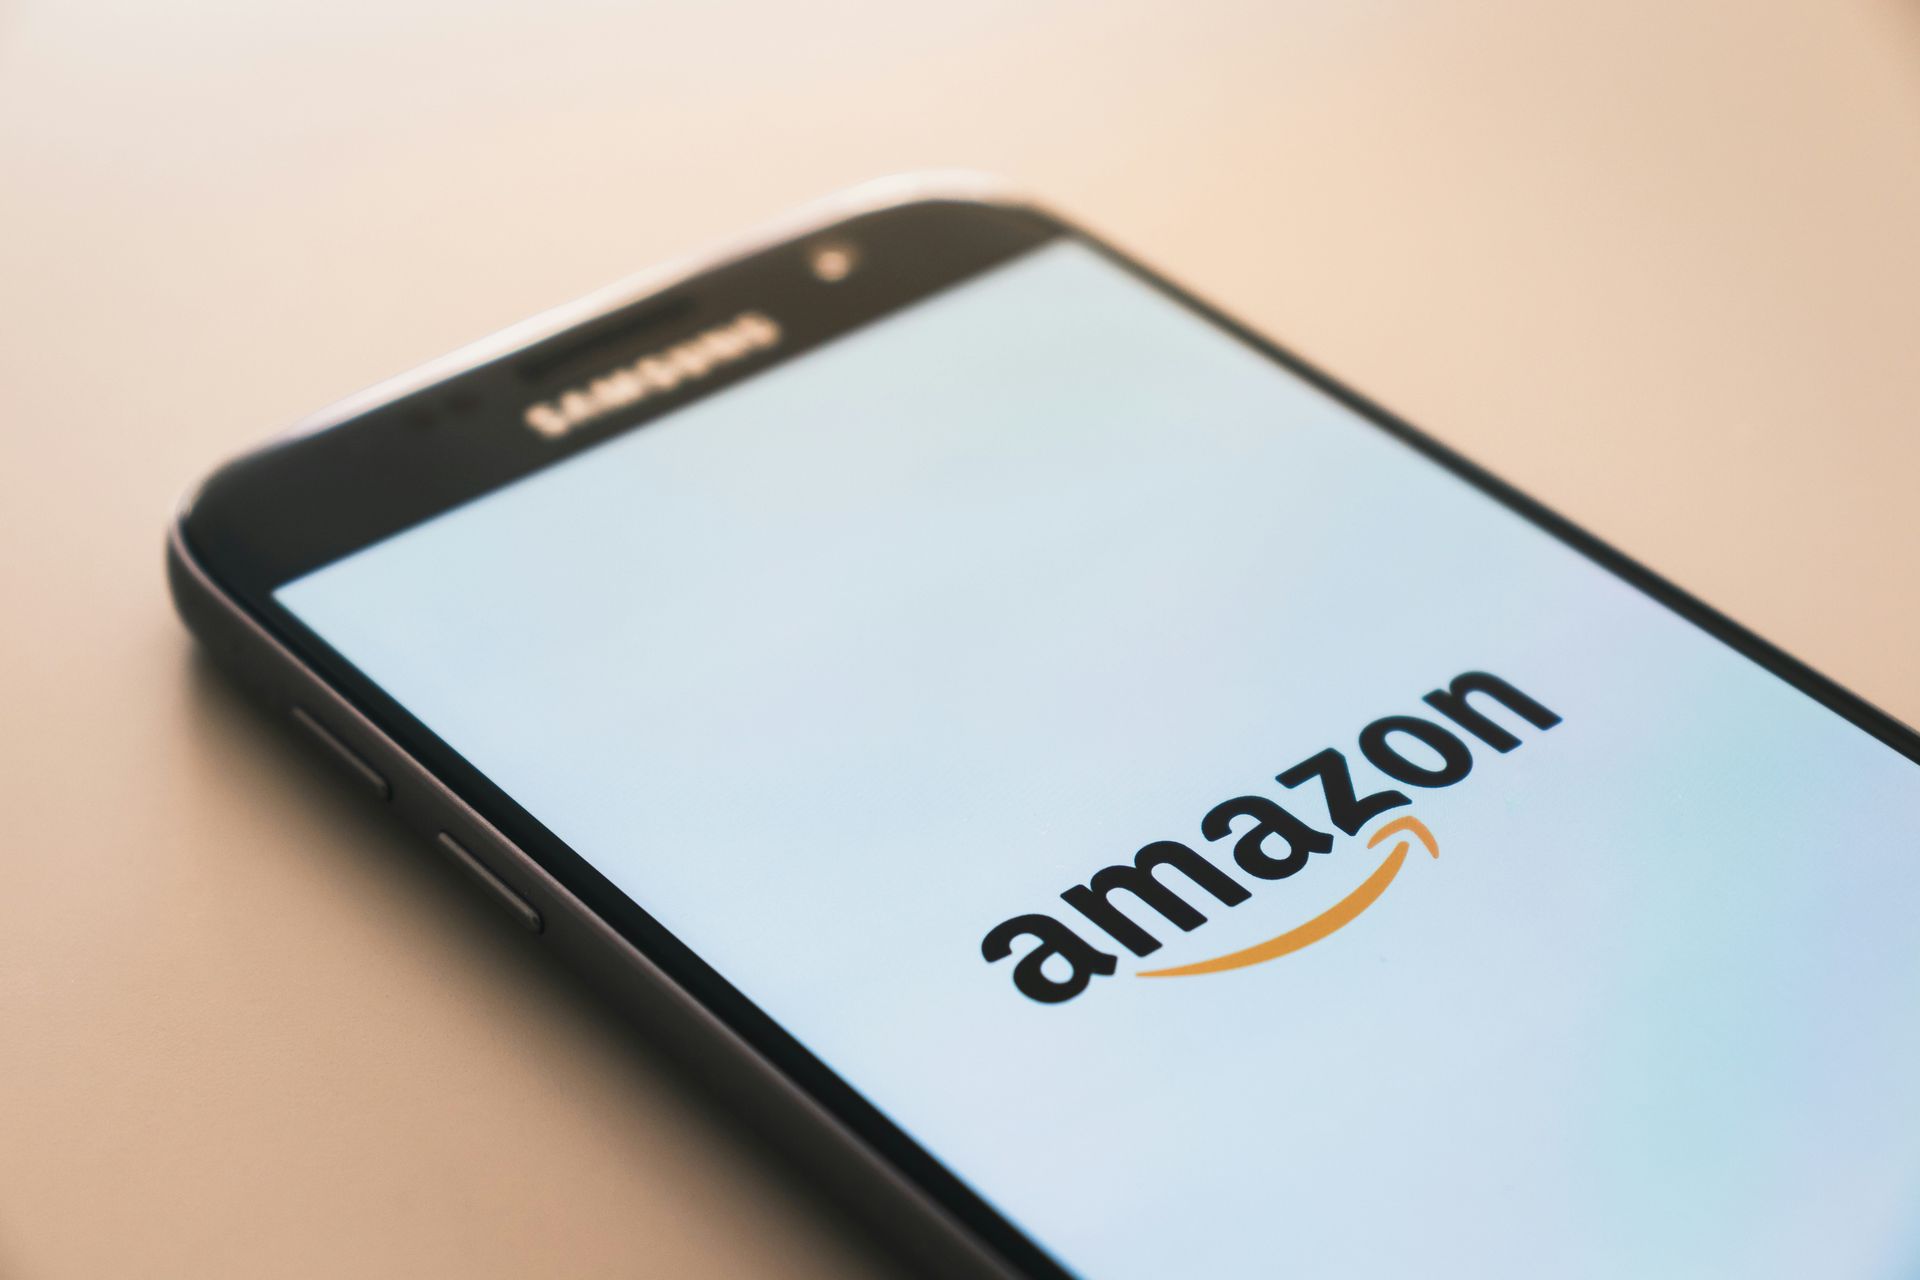 Amazon wants to use GitHub's data